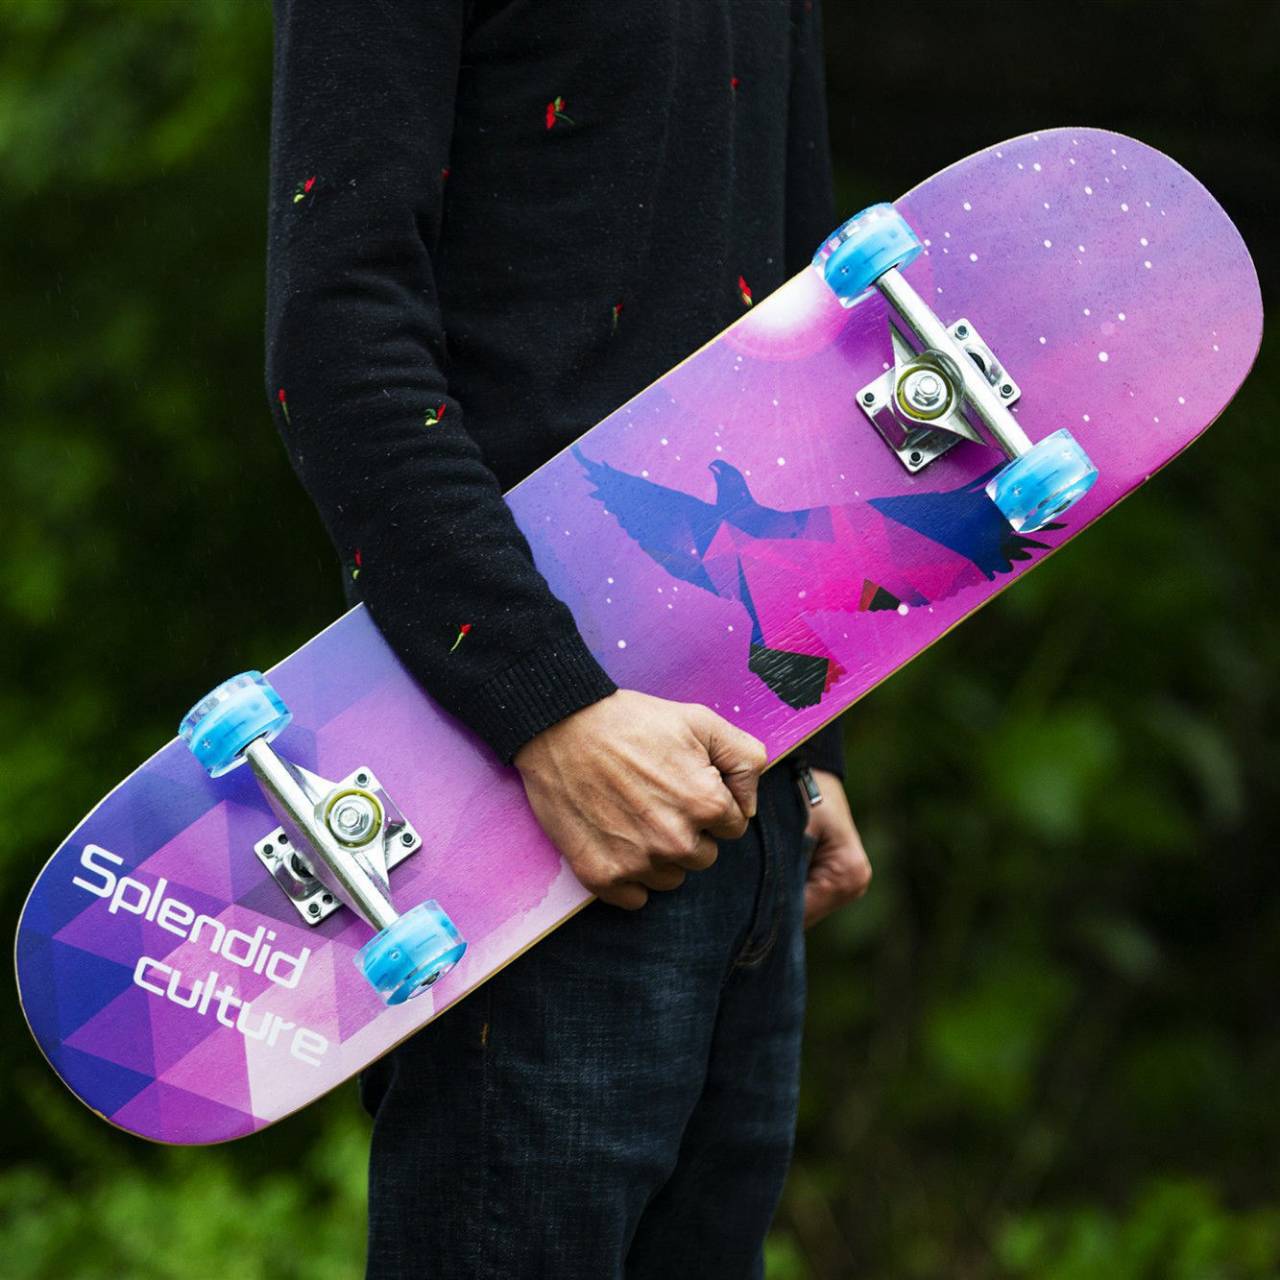 สเก็ตบอร์ด(สเก็ตบอร์ด) เกรดพรีเมี่ยม skateboards ไซส์ 80x20x10 cm  วัสดุอย่างดี มีน้ำหนัก ทนทาน สเก็ตบอด #SKB01